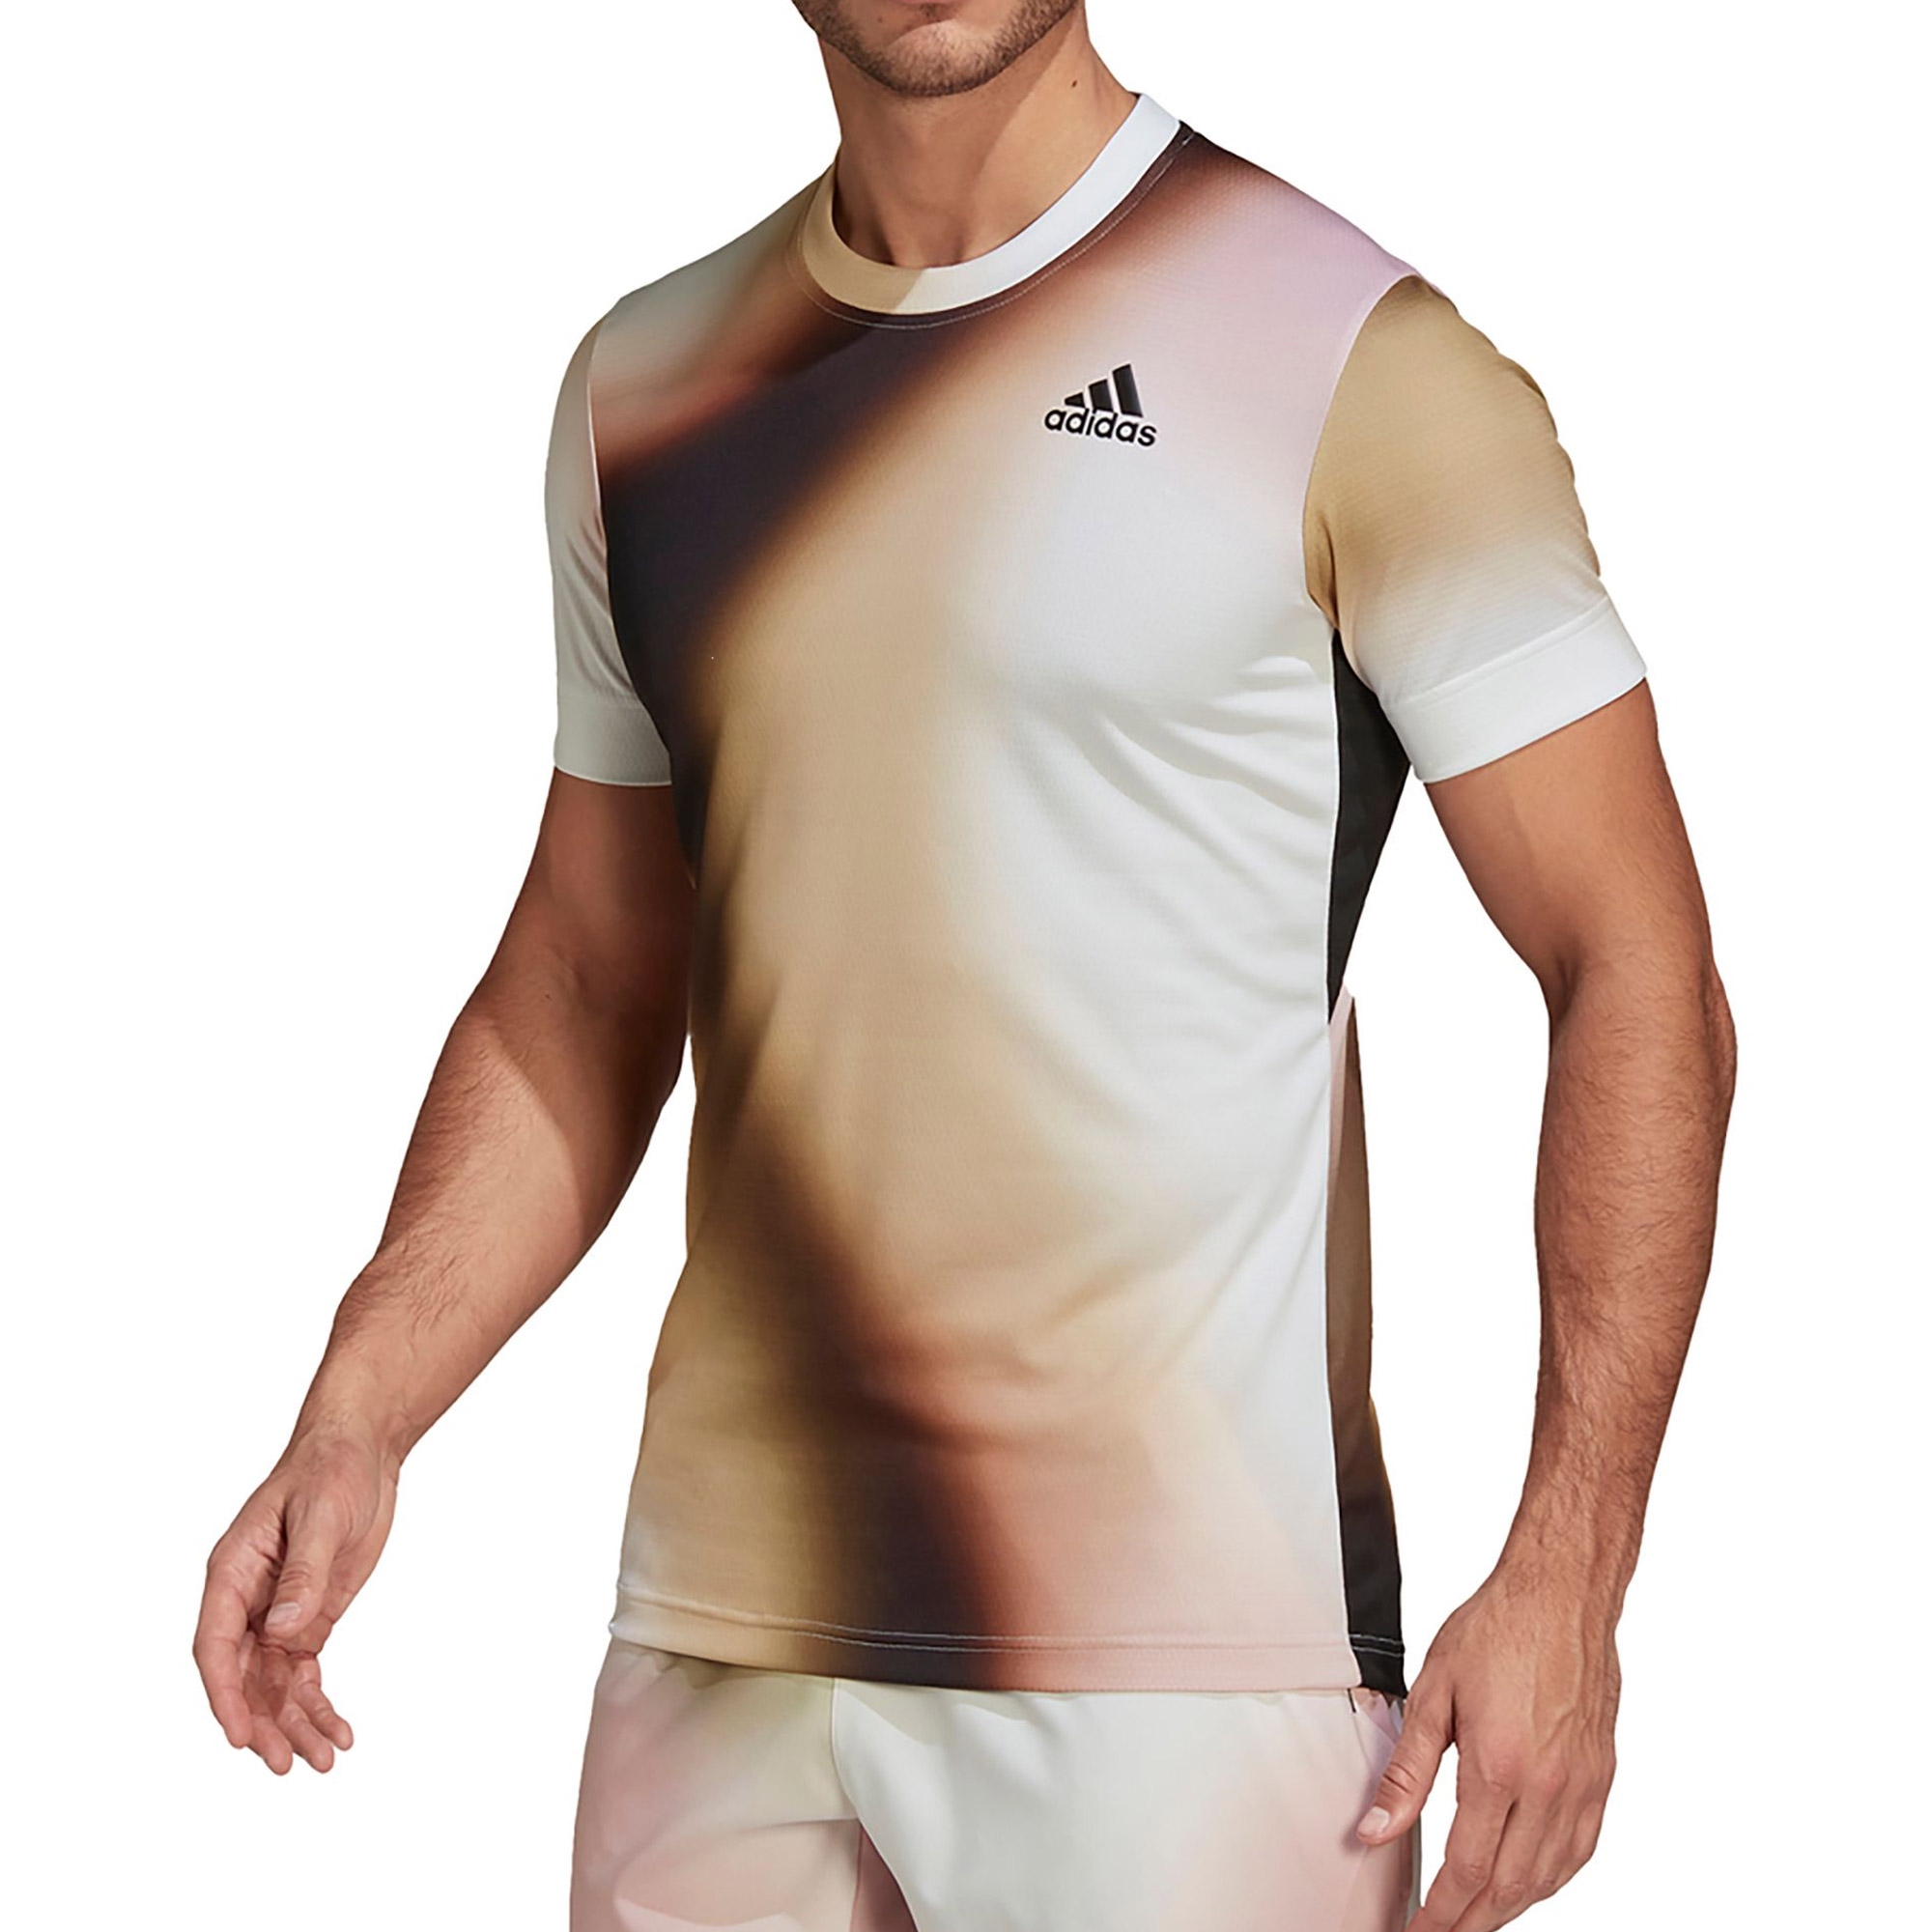 Adidas Melbourne Freelift Print Mens Tennis Tee White/brown/black